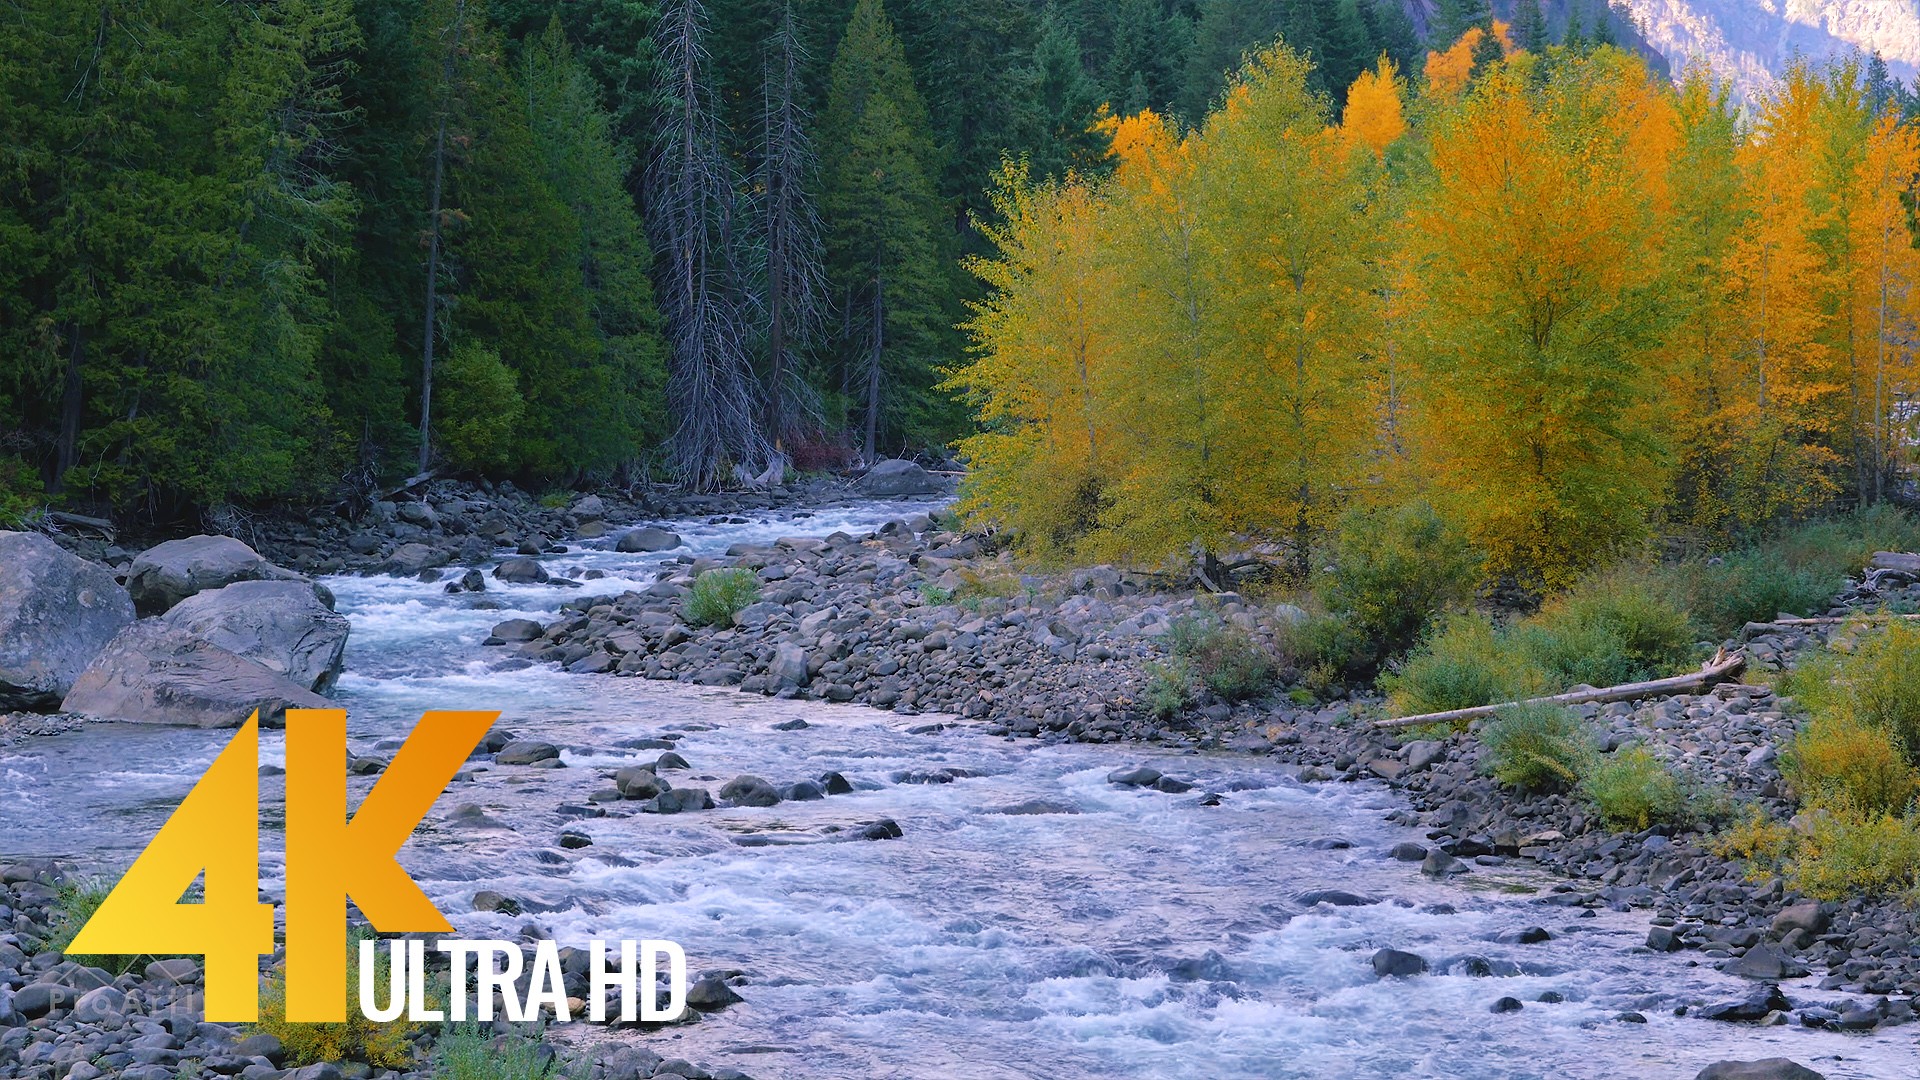 Nature Relax Video: Scenic Mountain River | ProArtInc